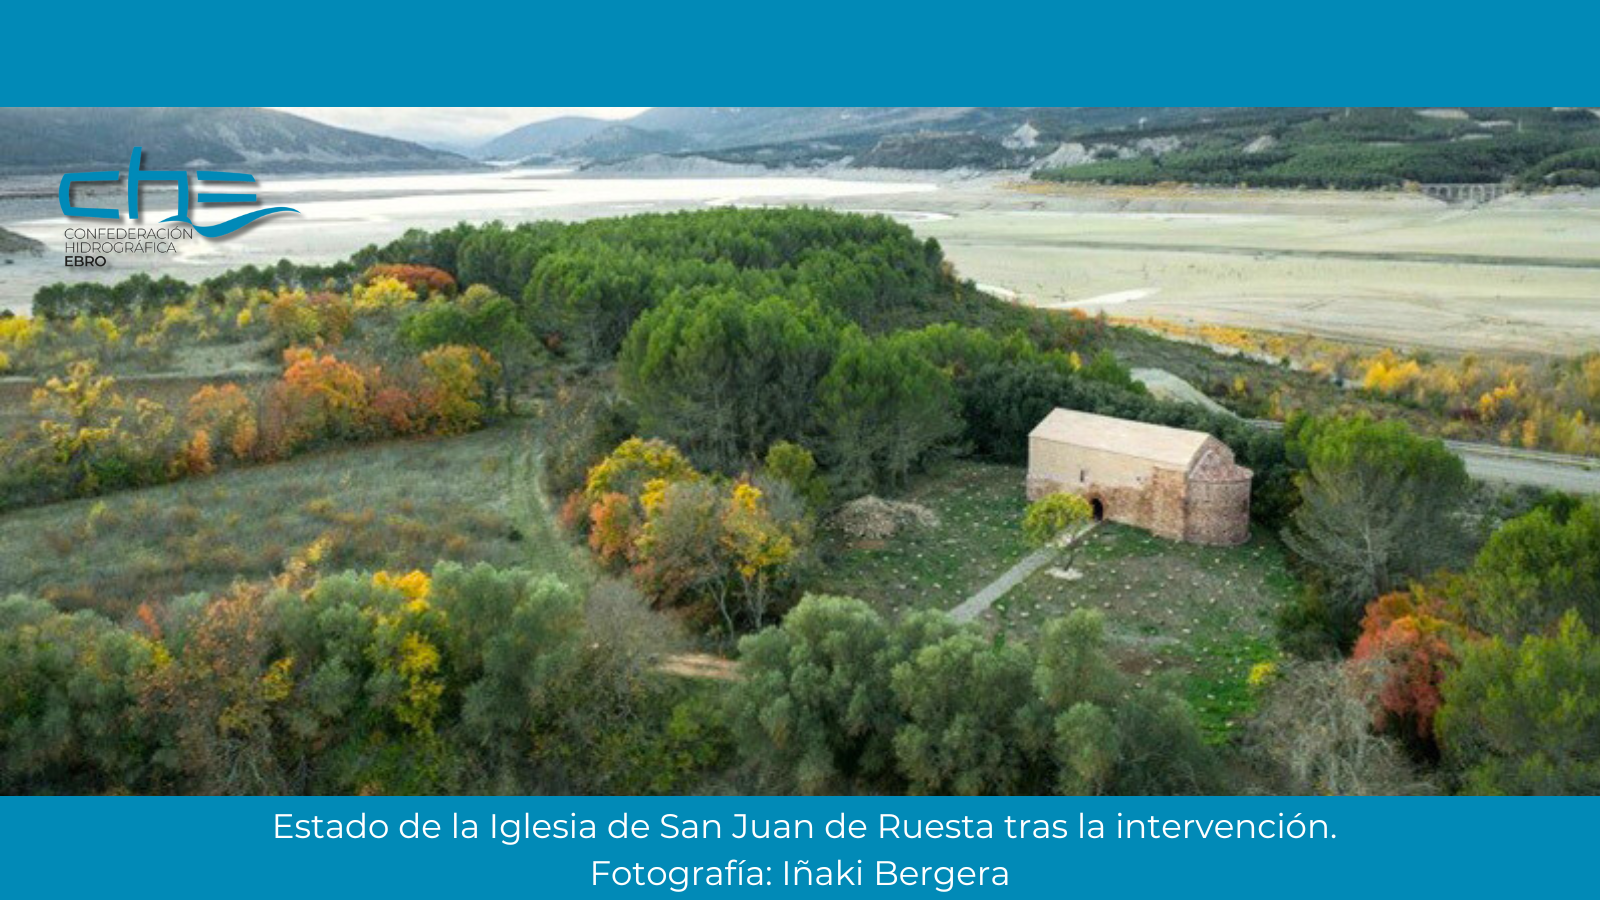 La Confederación Hidrográfica del Ebro realiza una nueva actuación de documentación y restauración - Imagen 0